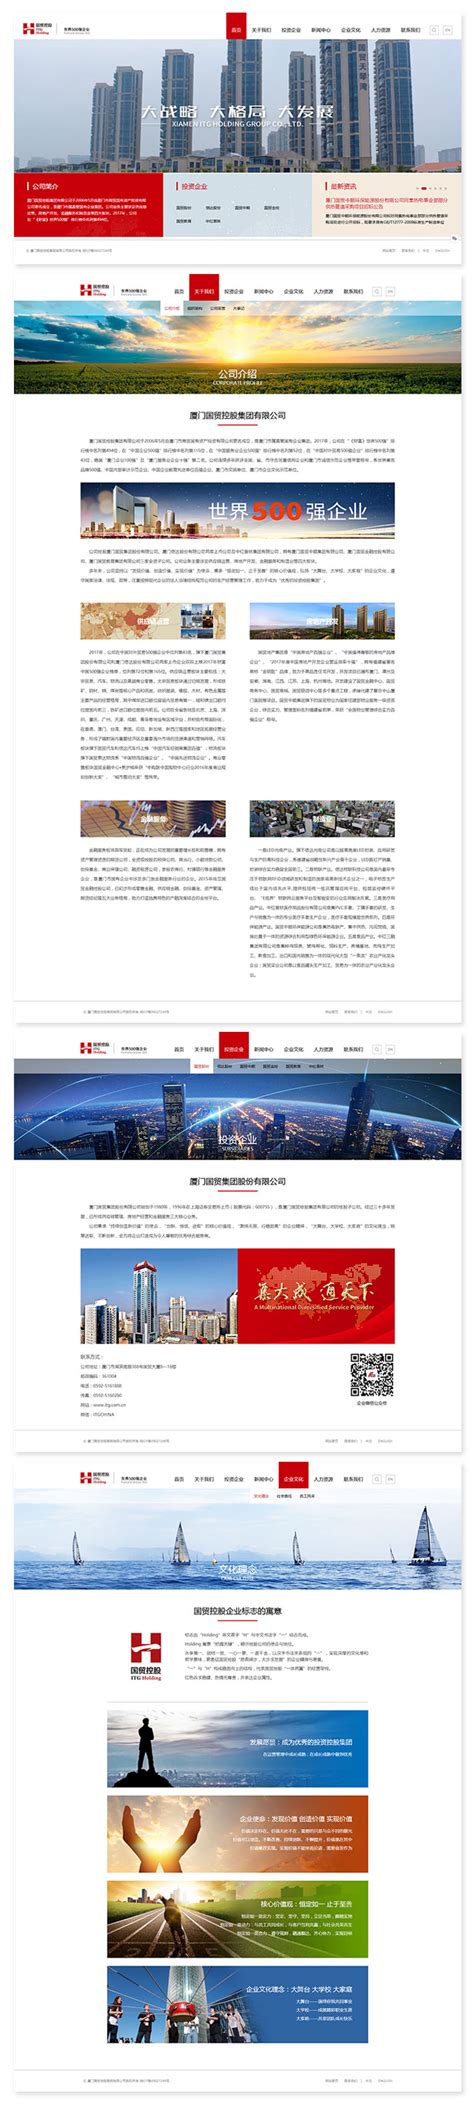 厦门国贸控股-网页设计及网站建设开发-翔翼设计